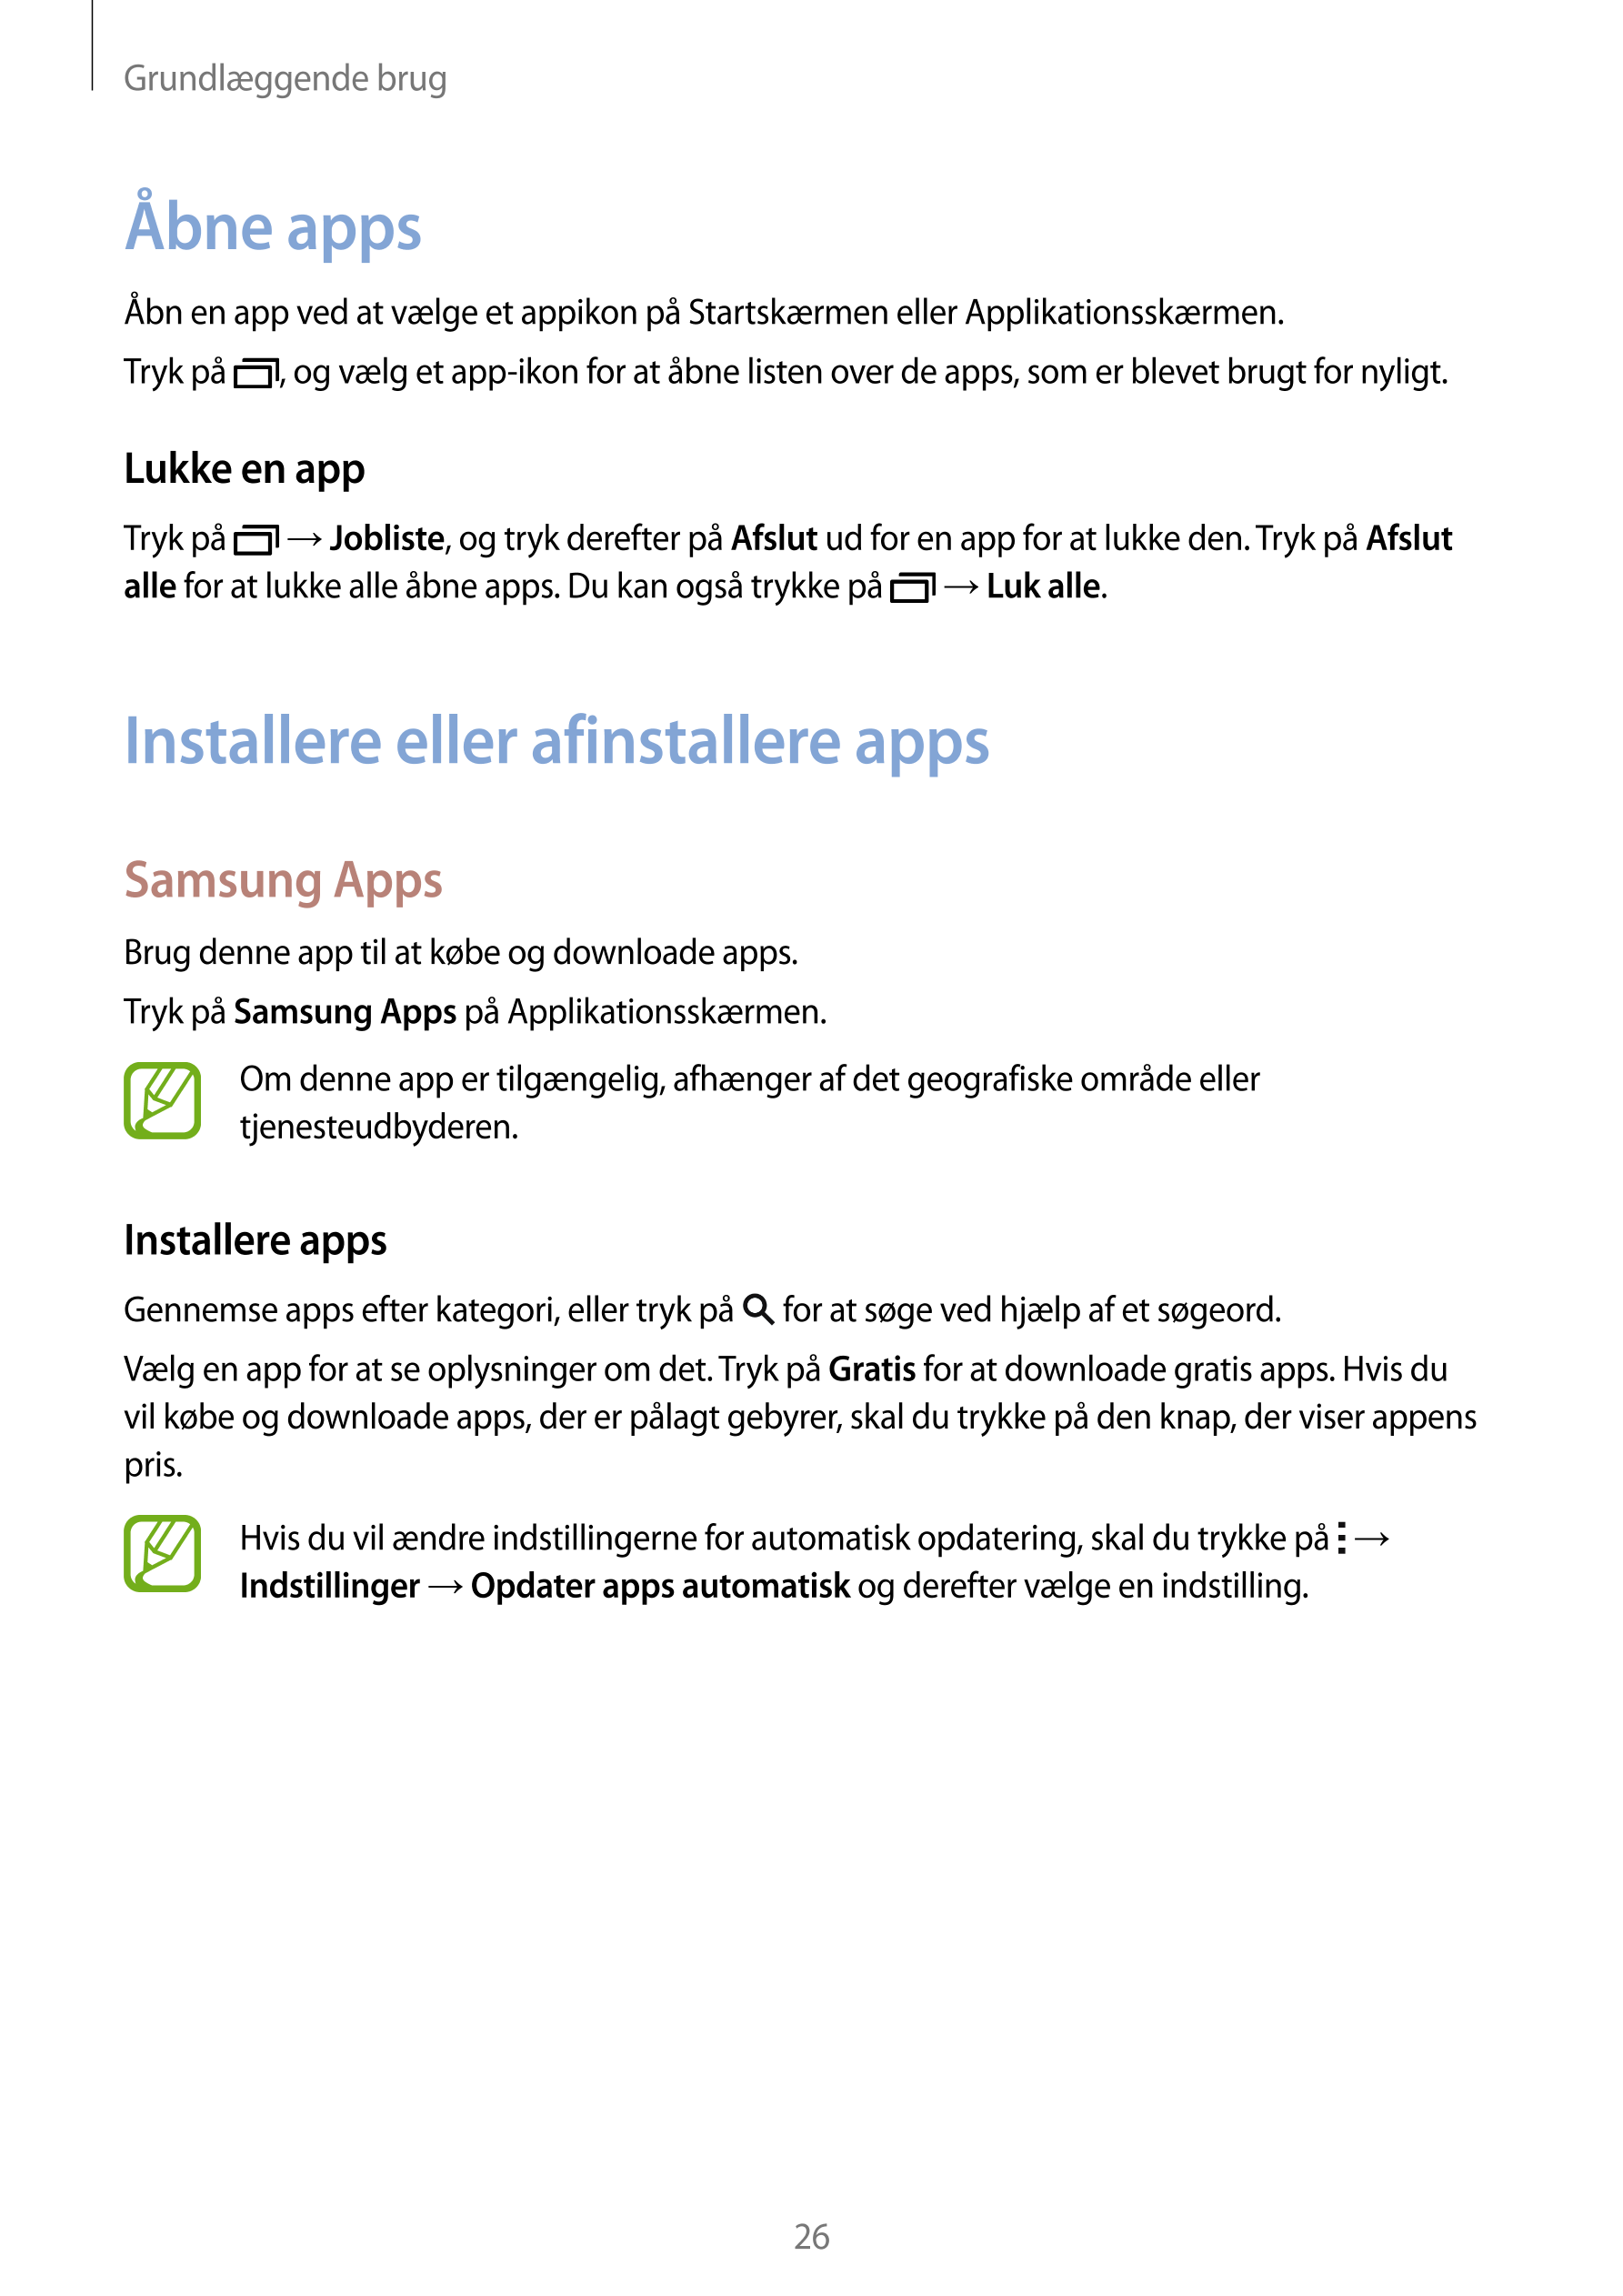 Grundlæggende brug
Åbne apps
Åbn en app ved at vælge et appikon på Startskærmen eller Applikationsskærmen.
Tryk på  , og vælg et